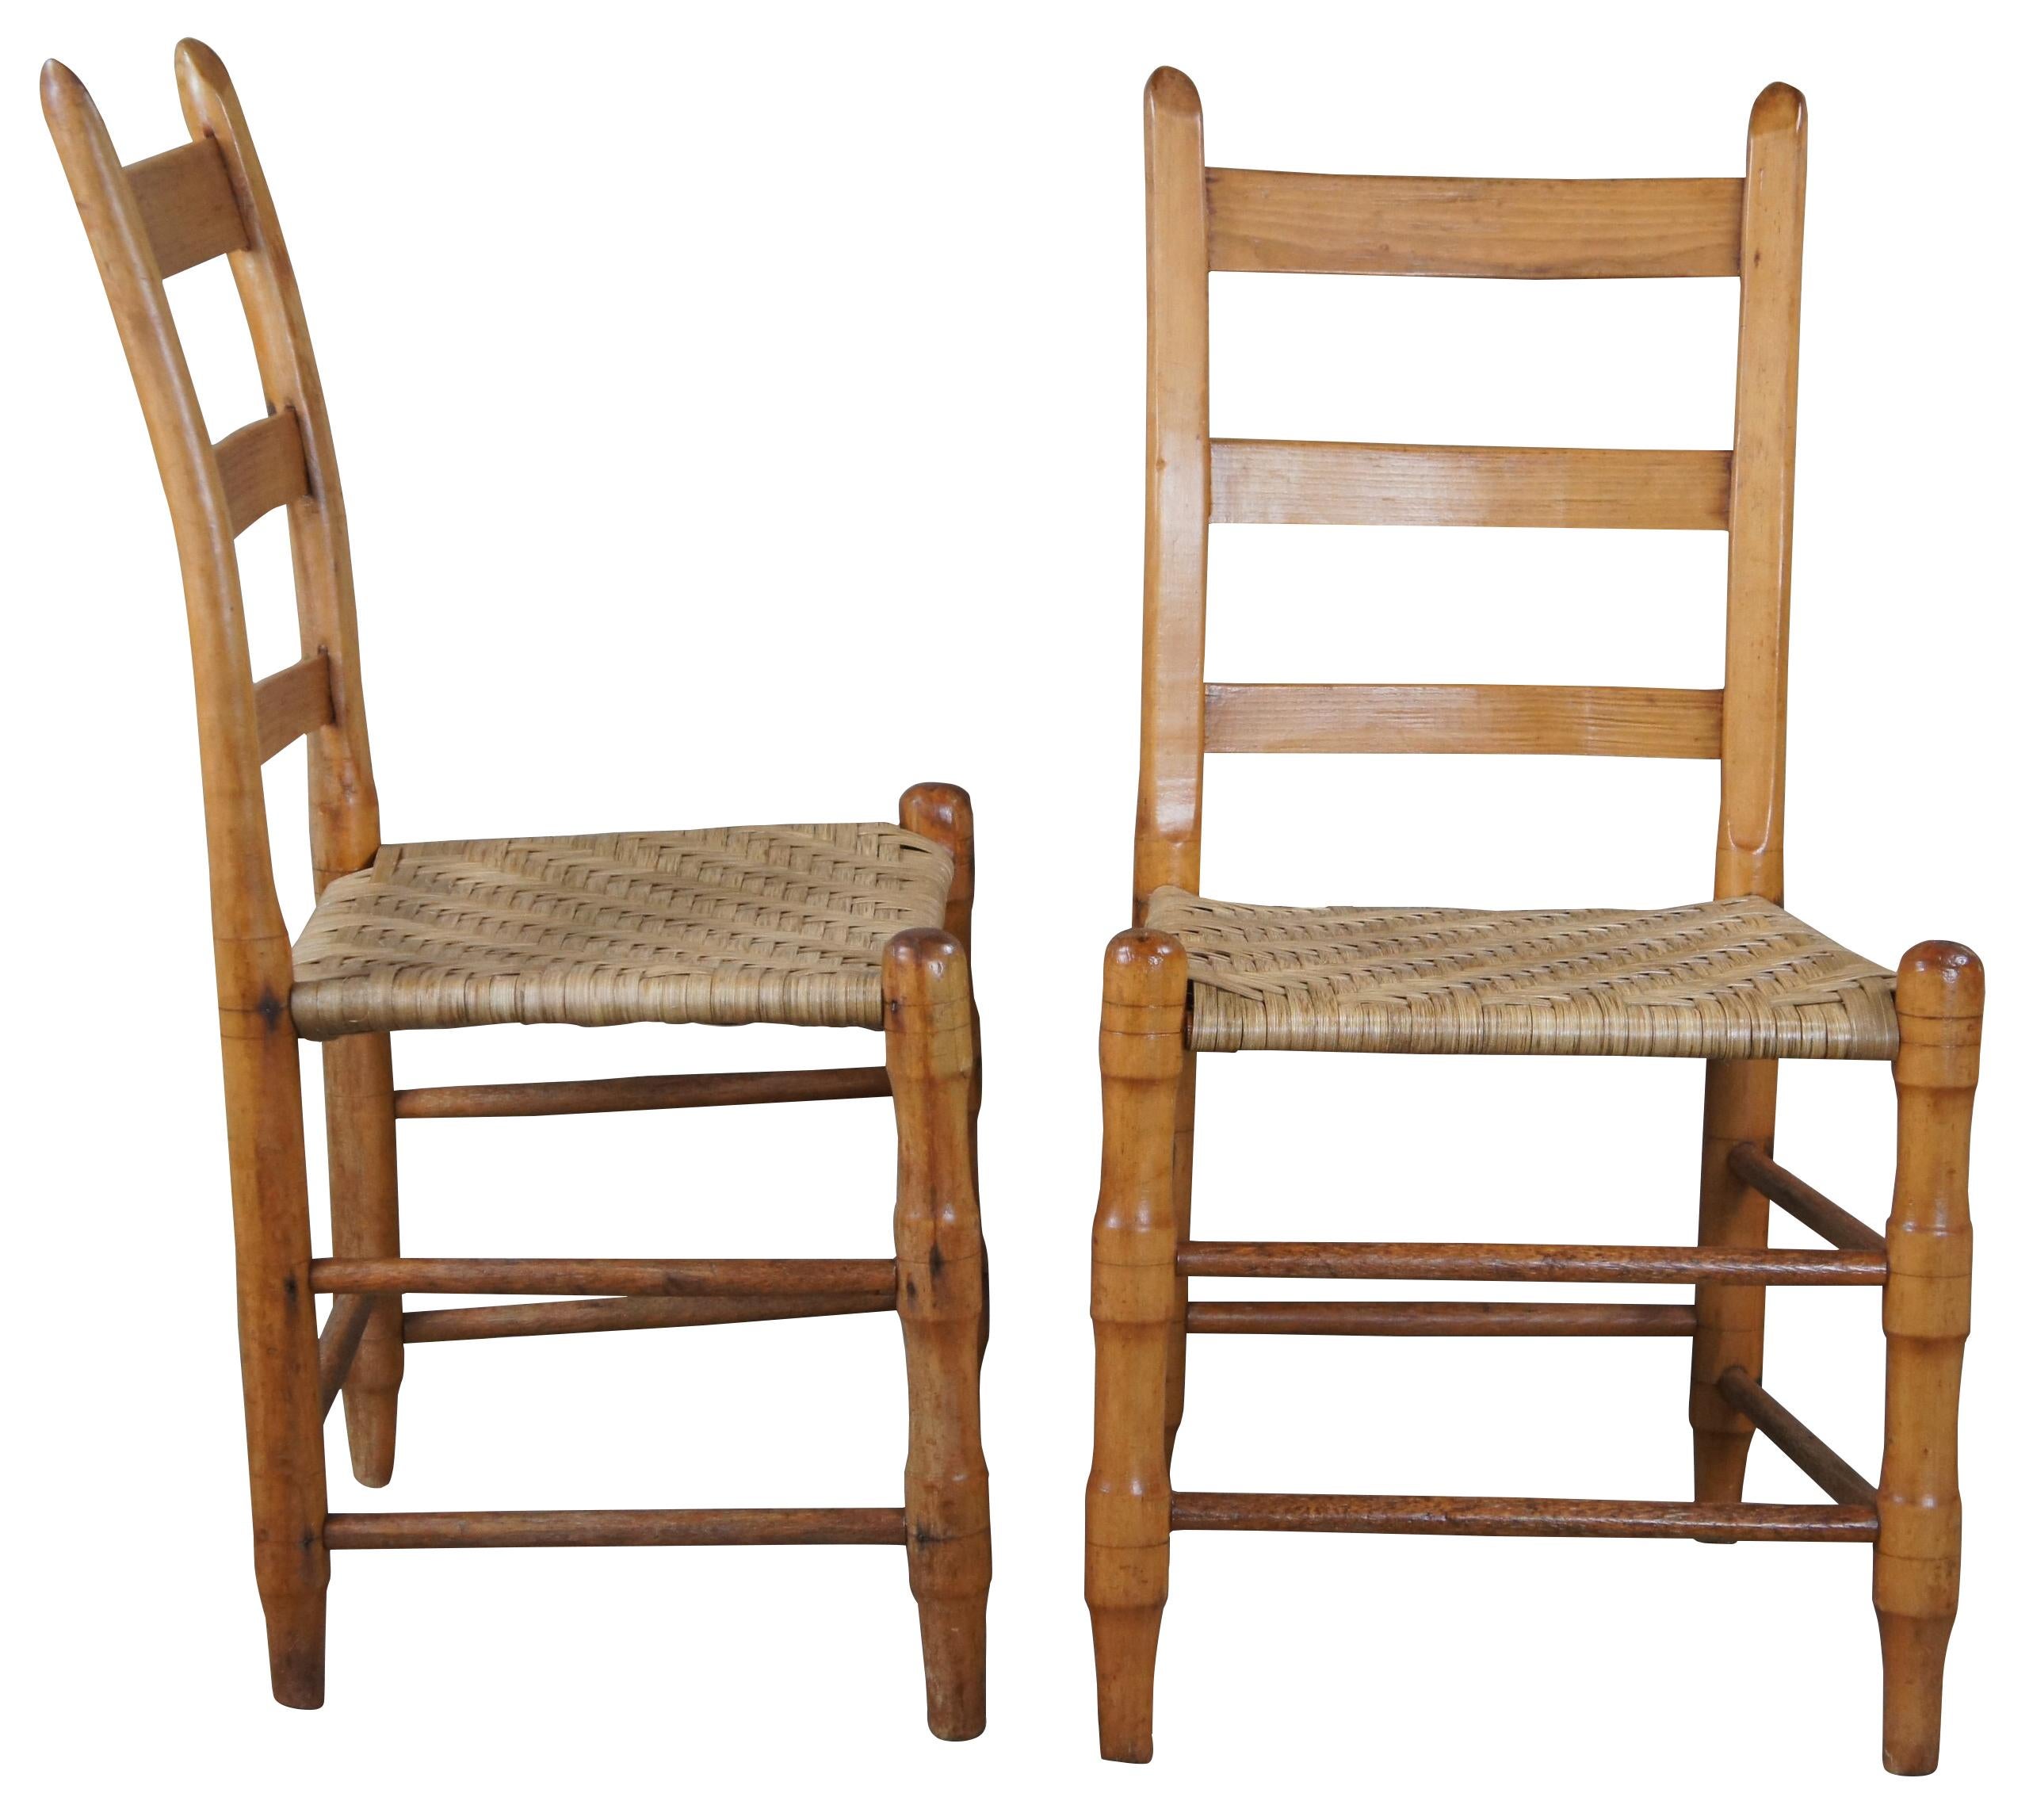 Chaises de salle à manger Vintage By Shakers en érable et pin avec assise en jonc.

18,5